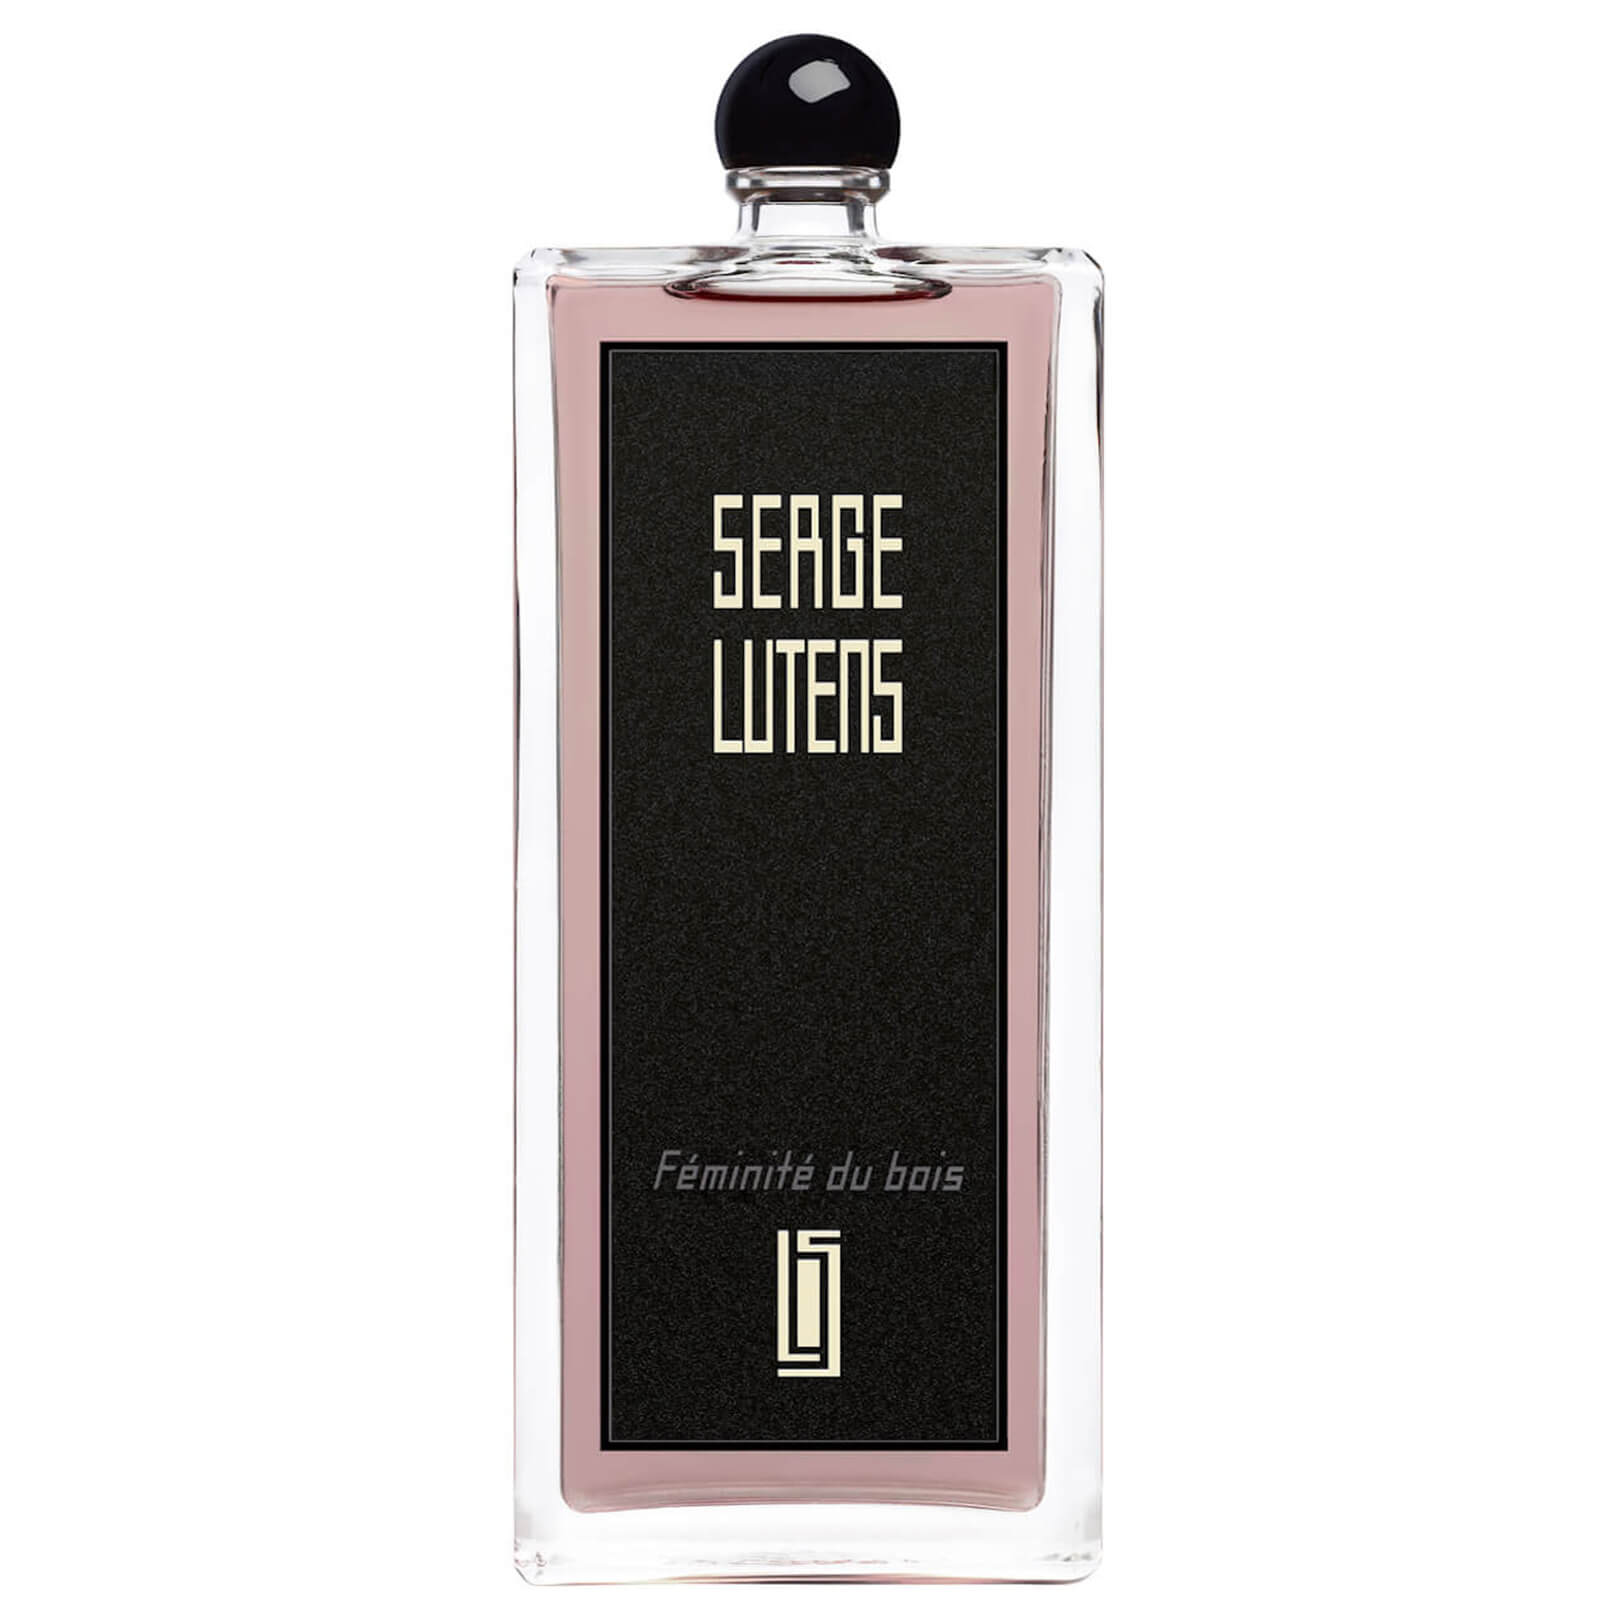 Photos - Women's Fragrance Serge Lutens Féminité du Bois Eau de Parfum - 100ml 36112355155 